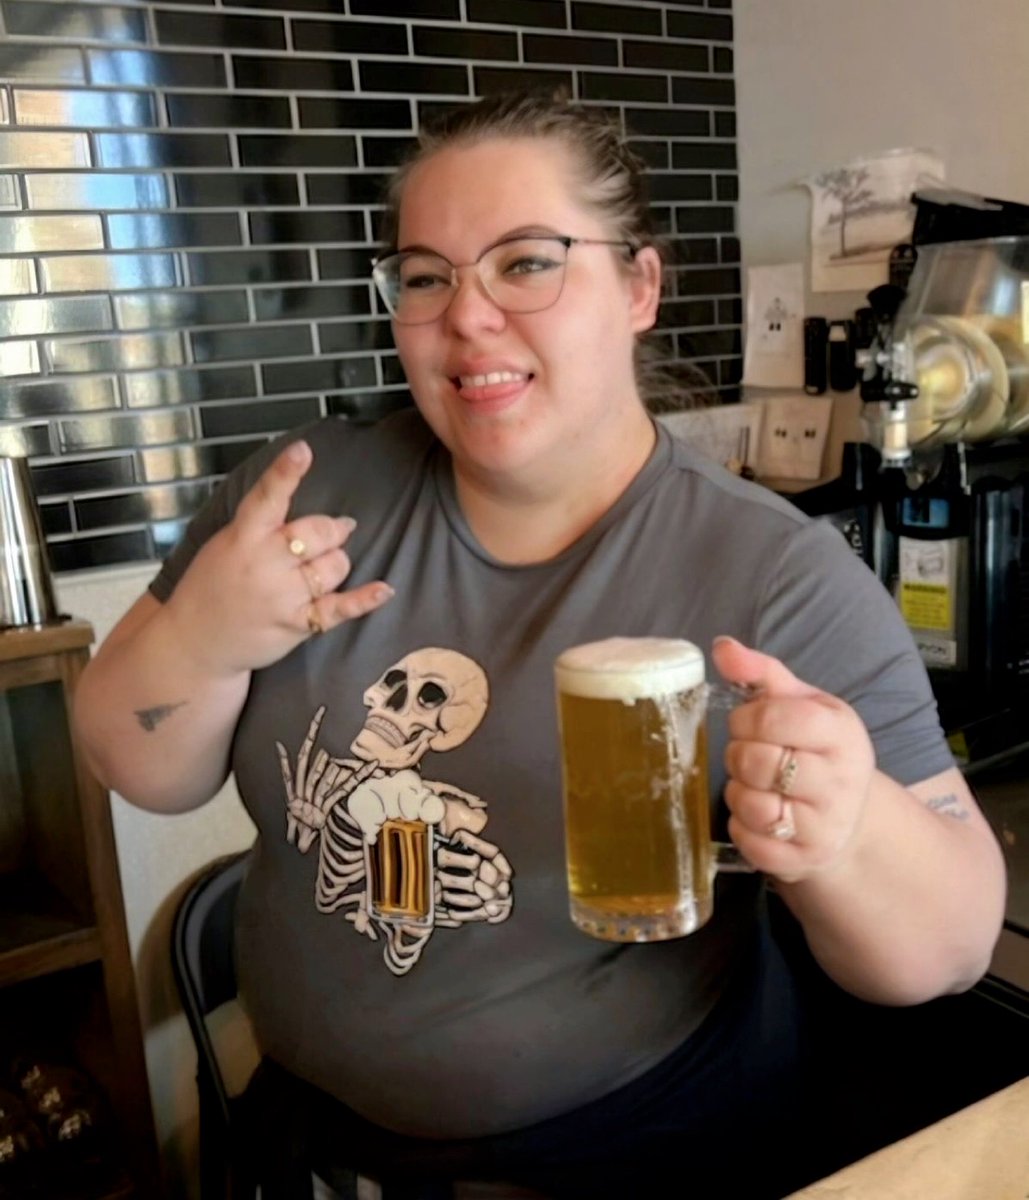 Rock out this Sunday with Rachel Reinhart 🤘

#sundayfunday #weekendfun #beertender #rockout #beerinspires #ohiobeer #drinklocal #craftbeersnob #beertime #beerstagram #independentbrewery